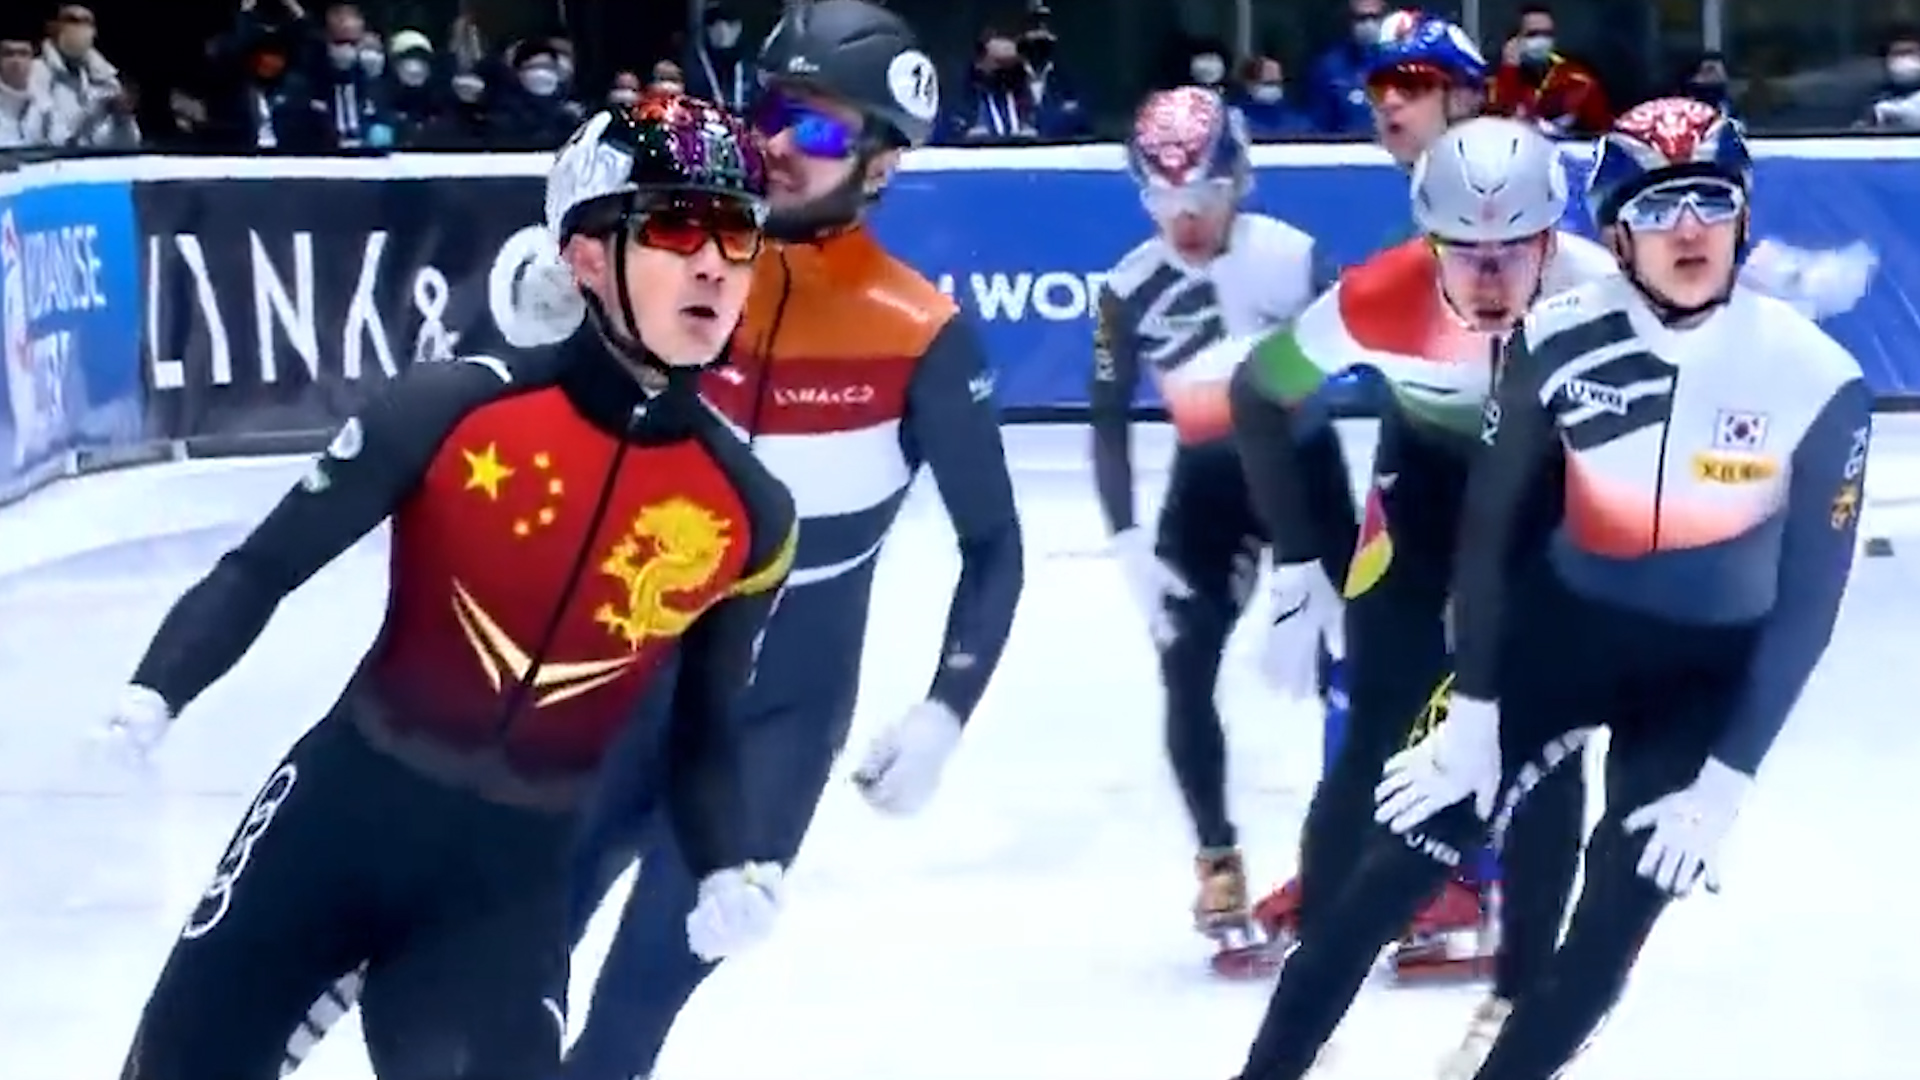 有片丨「冰」與「火」之歌 北京冬奧轉播主題曲《燃》正式上線